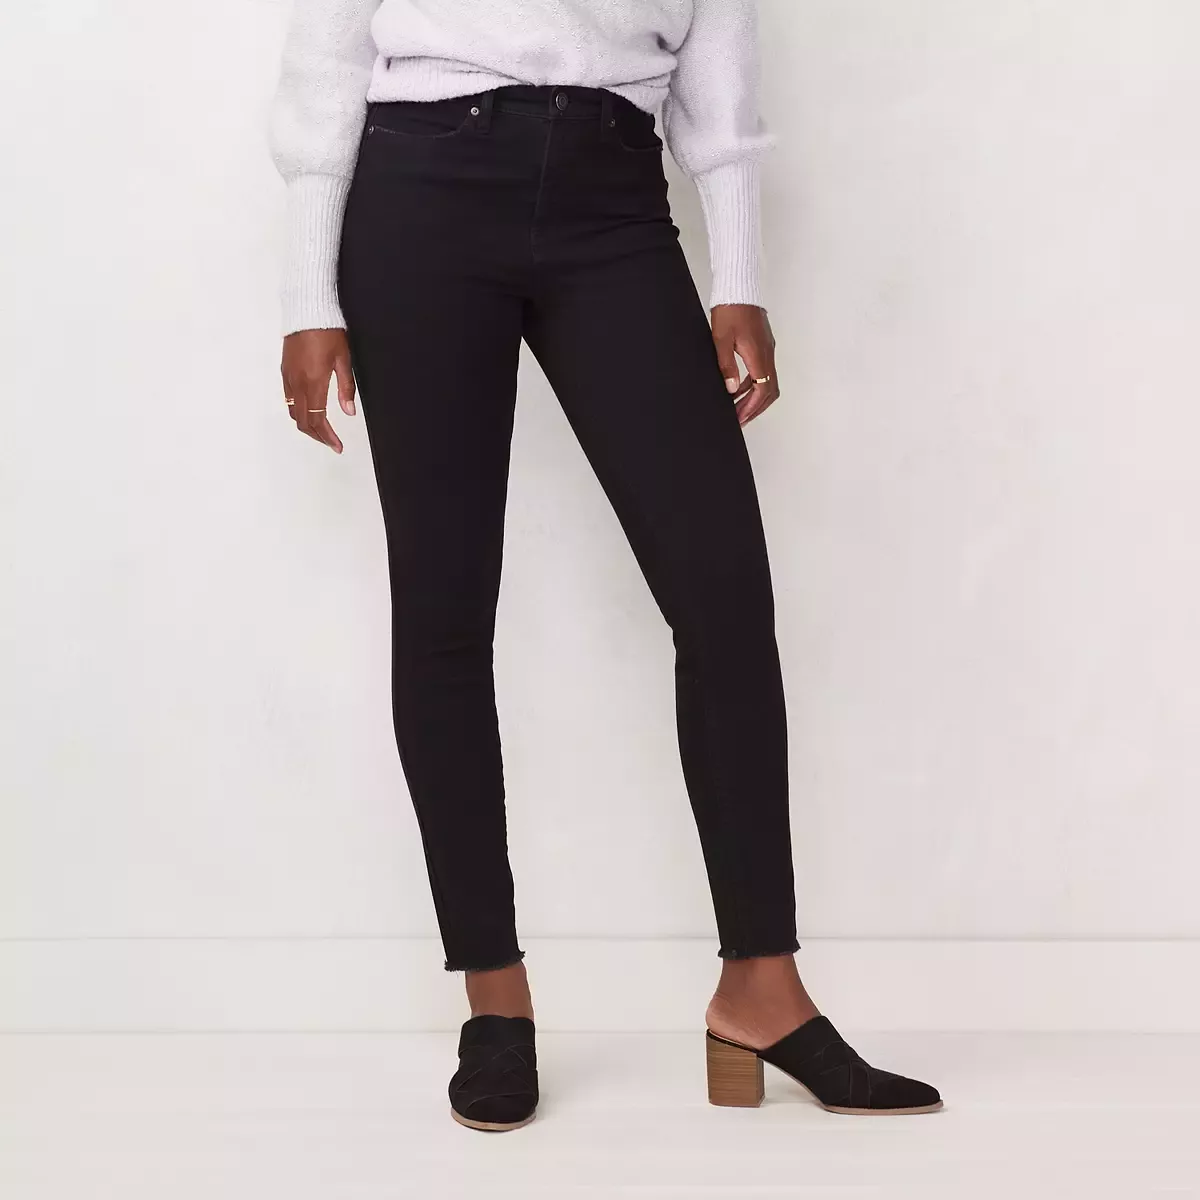 LC Lauren Conrad Super Skinny Black Mid Rise Leggings Size 4X NEW